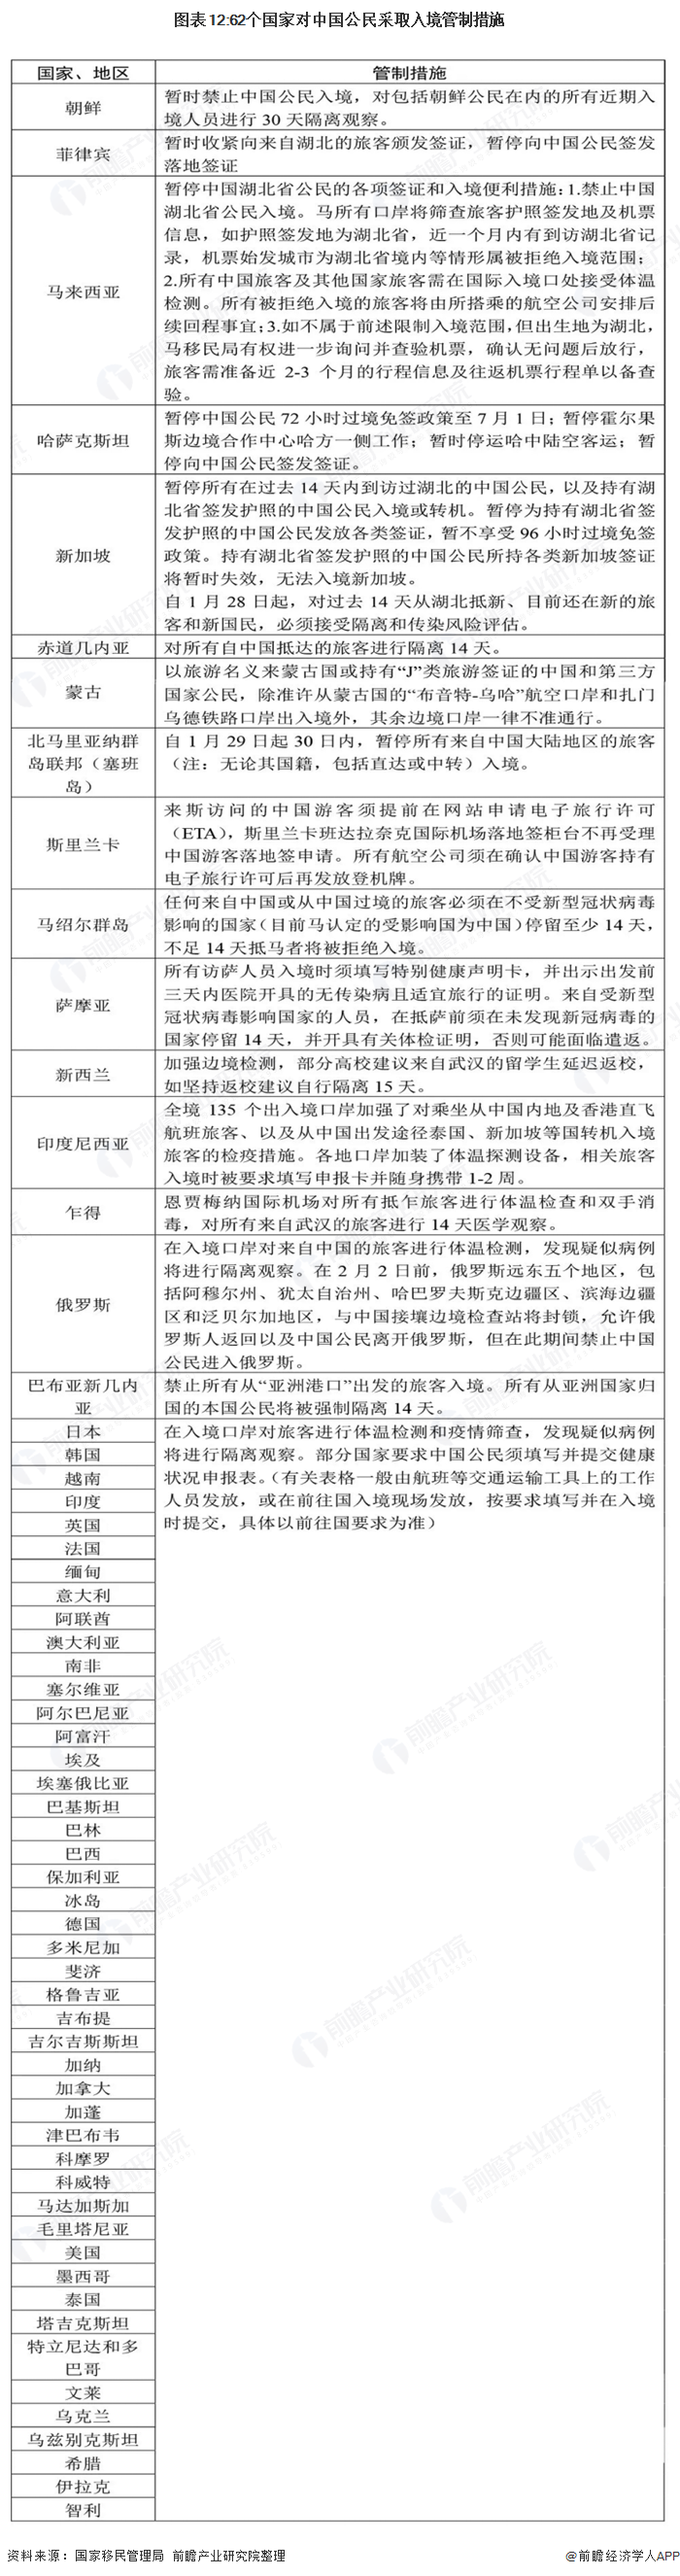 图表12:62个国家对中国公民采取入境管制措施